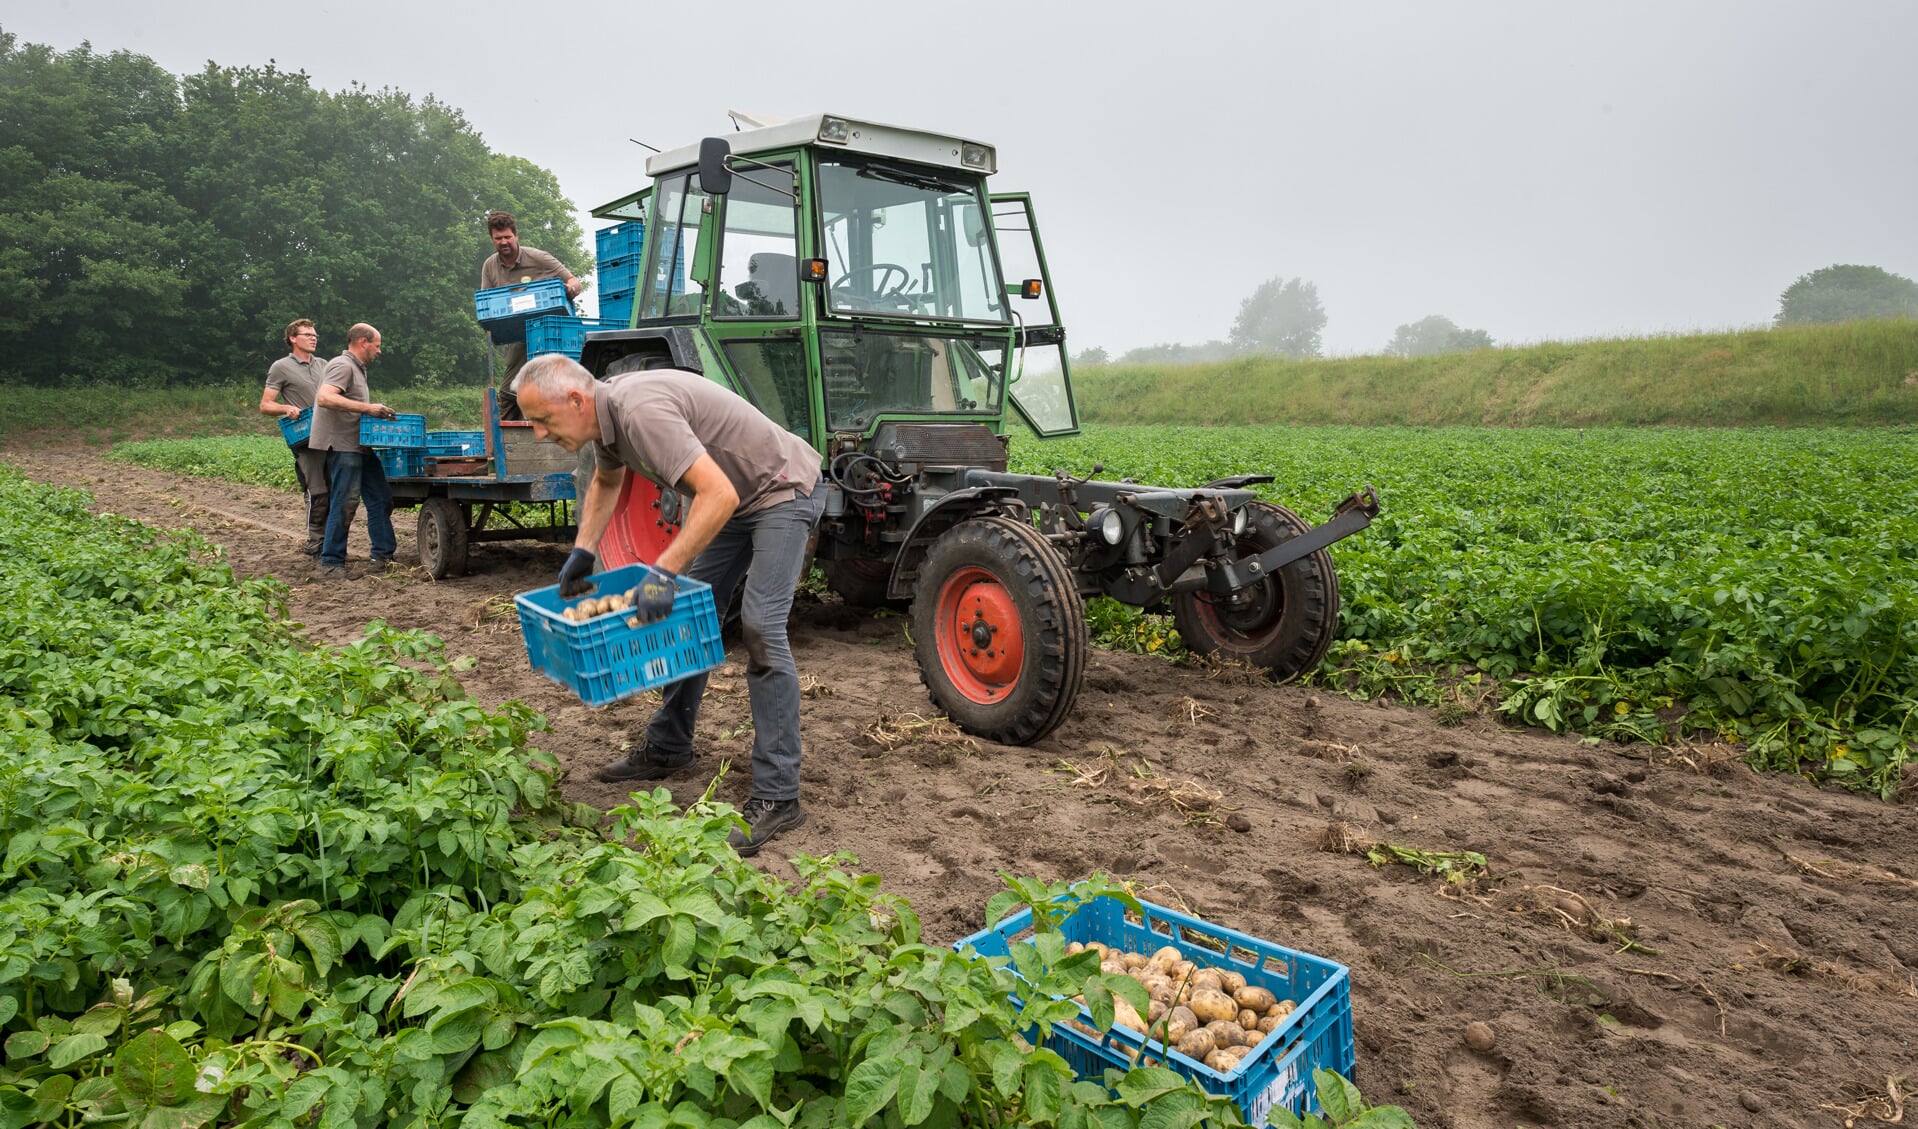 De komende weken worden de vroege aardappels geoogst. Foto: Wim van Vossen